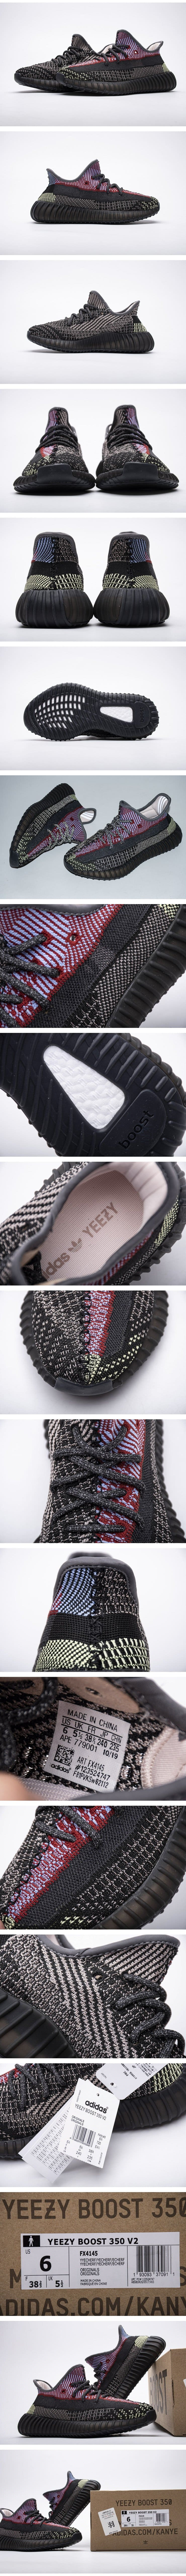  Adidas Yeezy Boost 350 V2 “Yecheil Reflective” Real Boost アディダス イージィーブースト350 V2 イェチェイルリフレクティブ